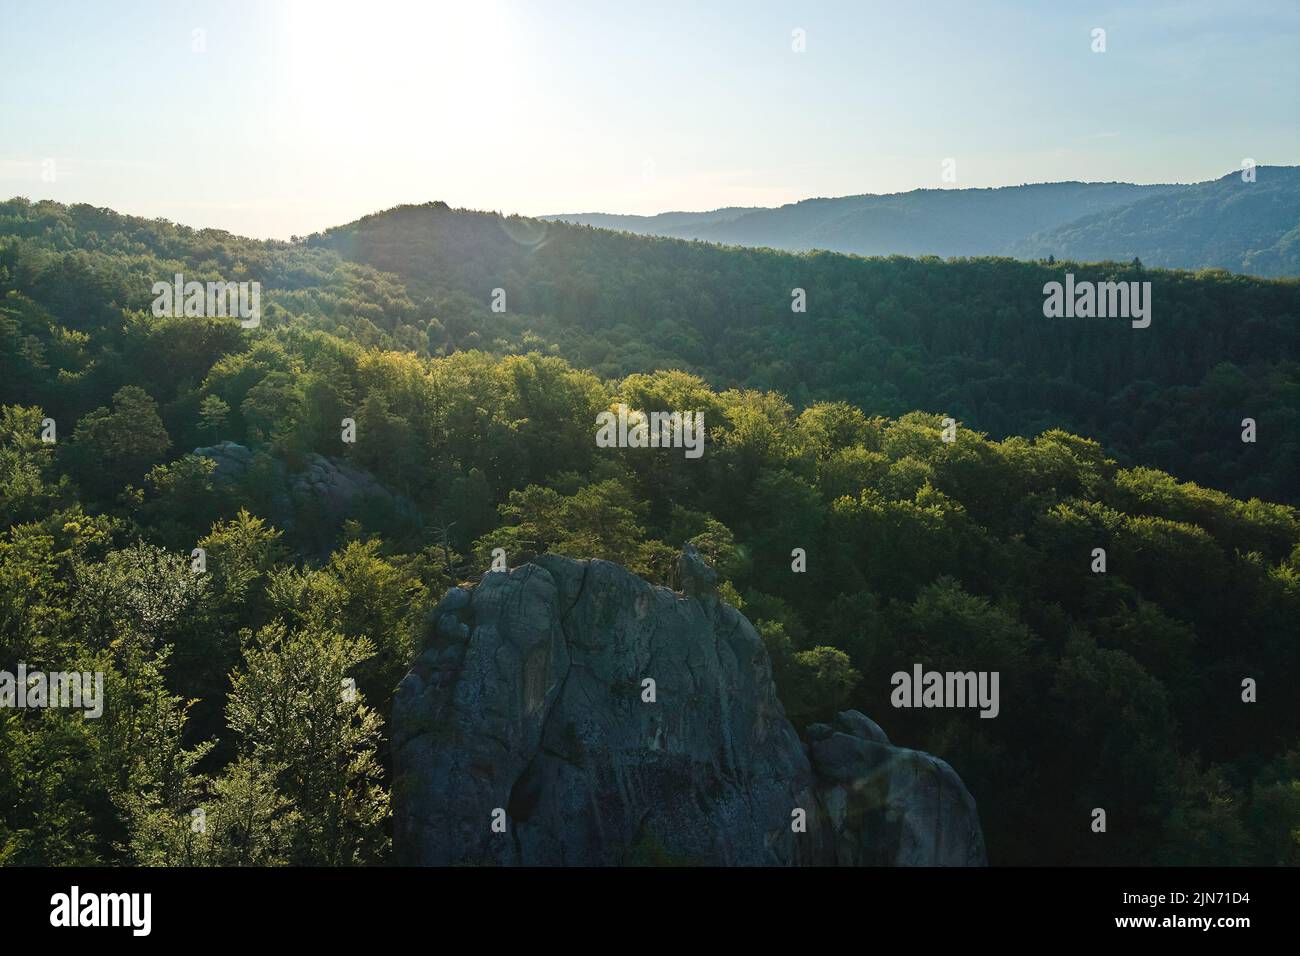 Vue aérienne sur un paysage lumineux avec des arbres de forêt verte et de grands rochers rocheux entre des bois denses en été. Magnifique paysage de forêt sauvage Banque D'Images